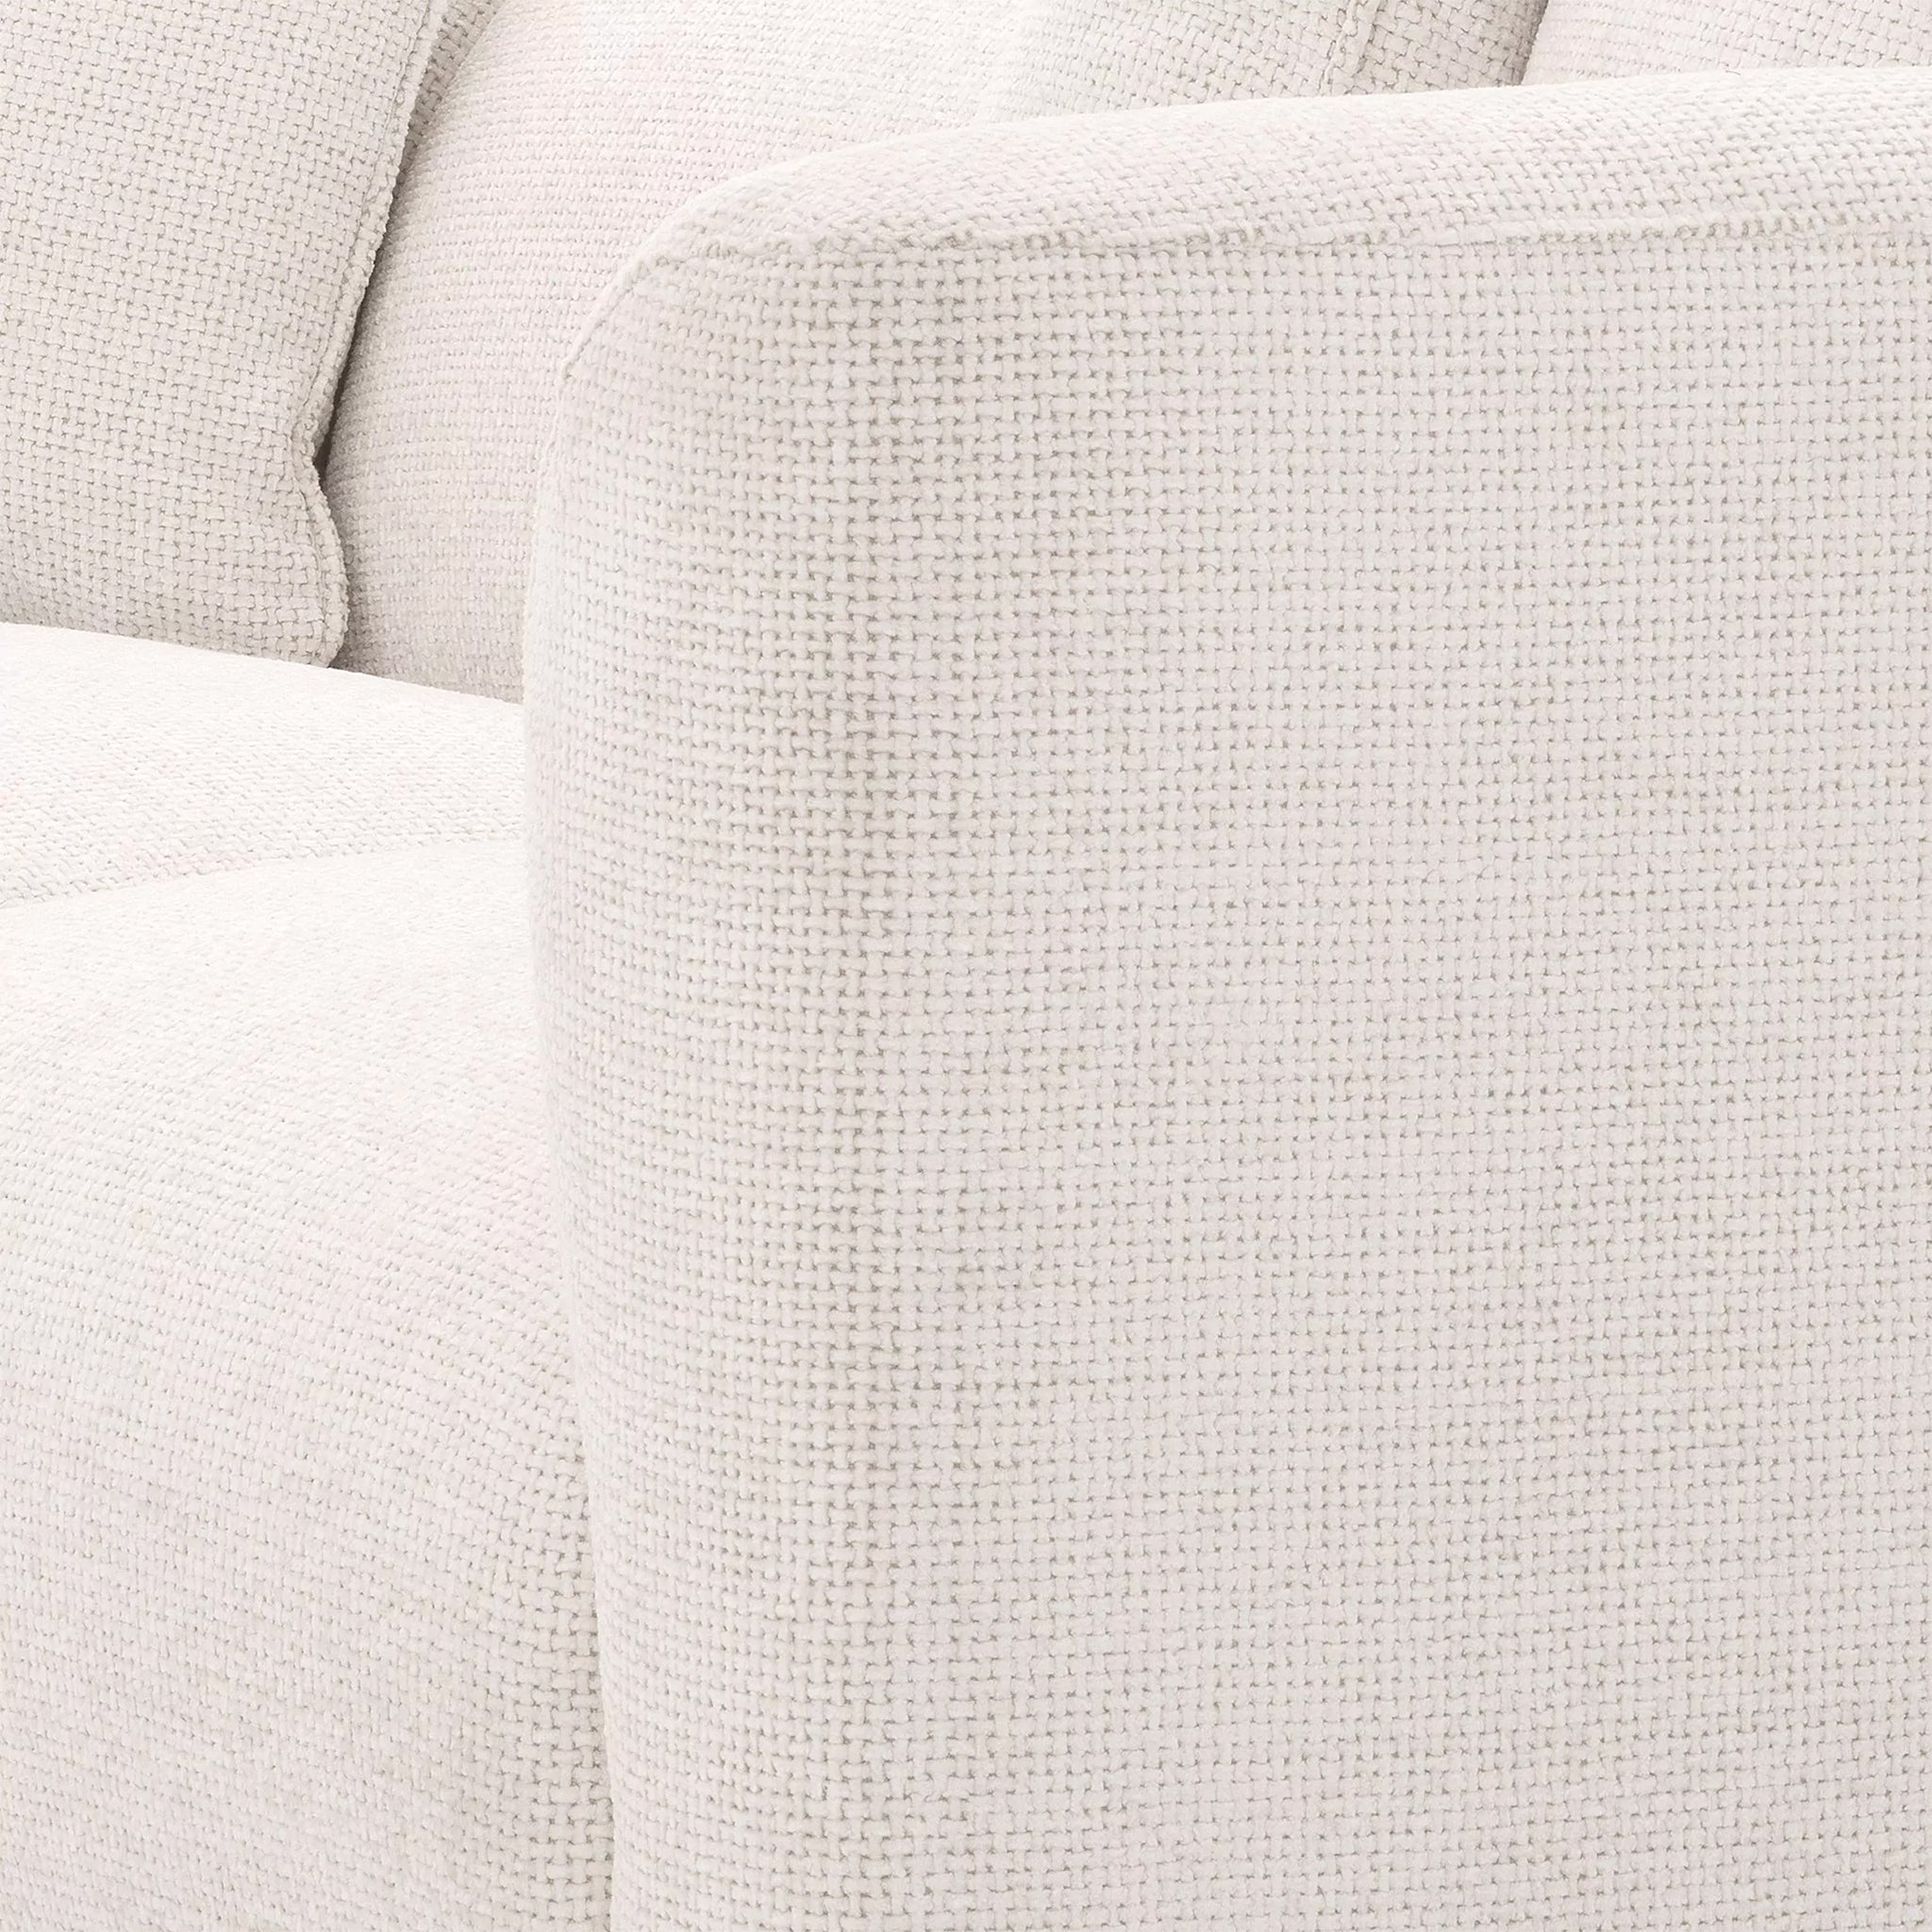 eichholtz corso lyssa off-white sofa loveseats & sofas 